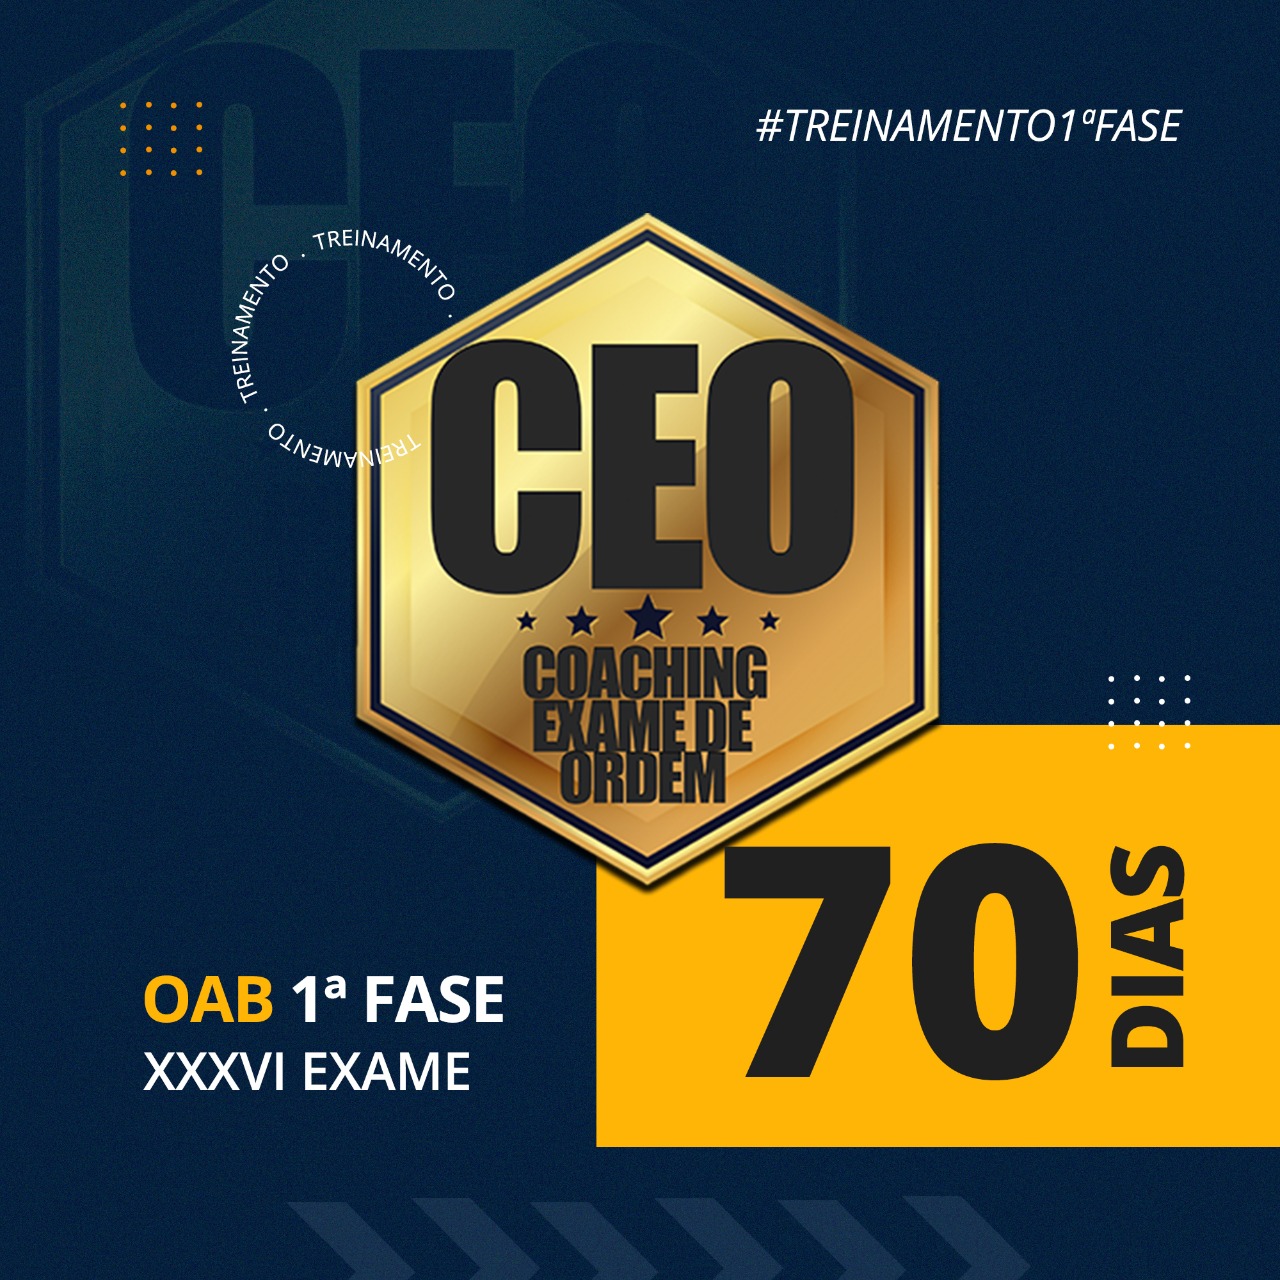 CEO EXTENSIVO XXXVI EXAME - OAB 1ª FASE - 70 DIAS